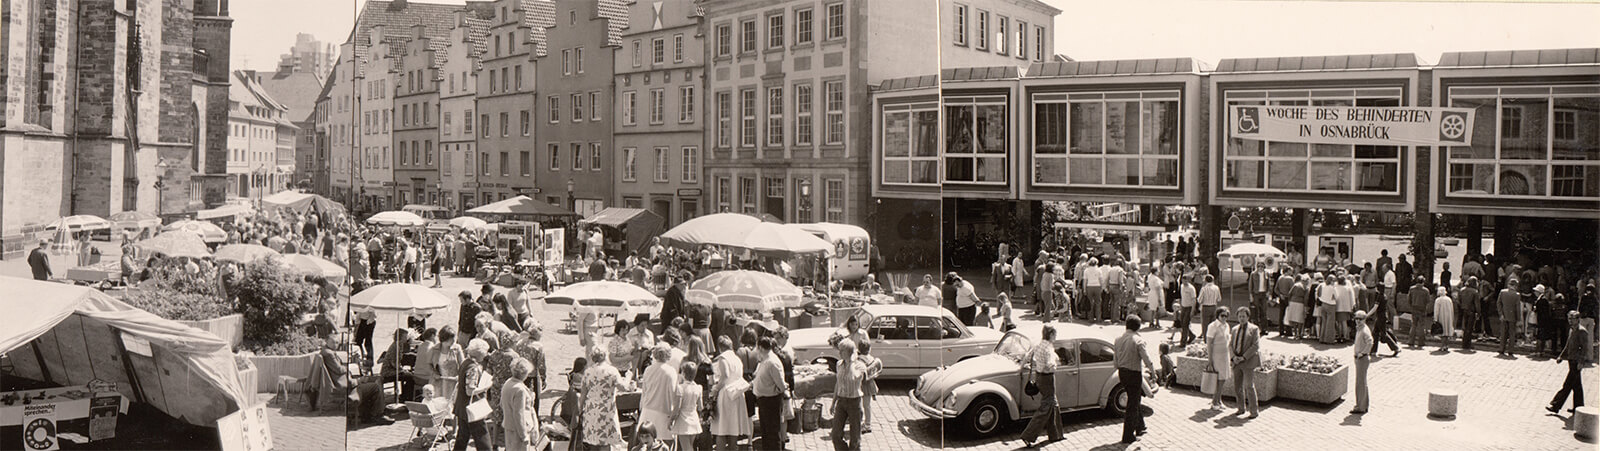 Markt Osnabrück 1974 - 1977>